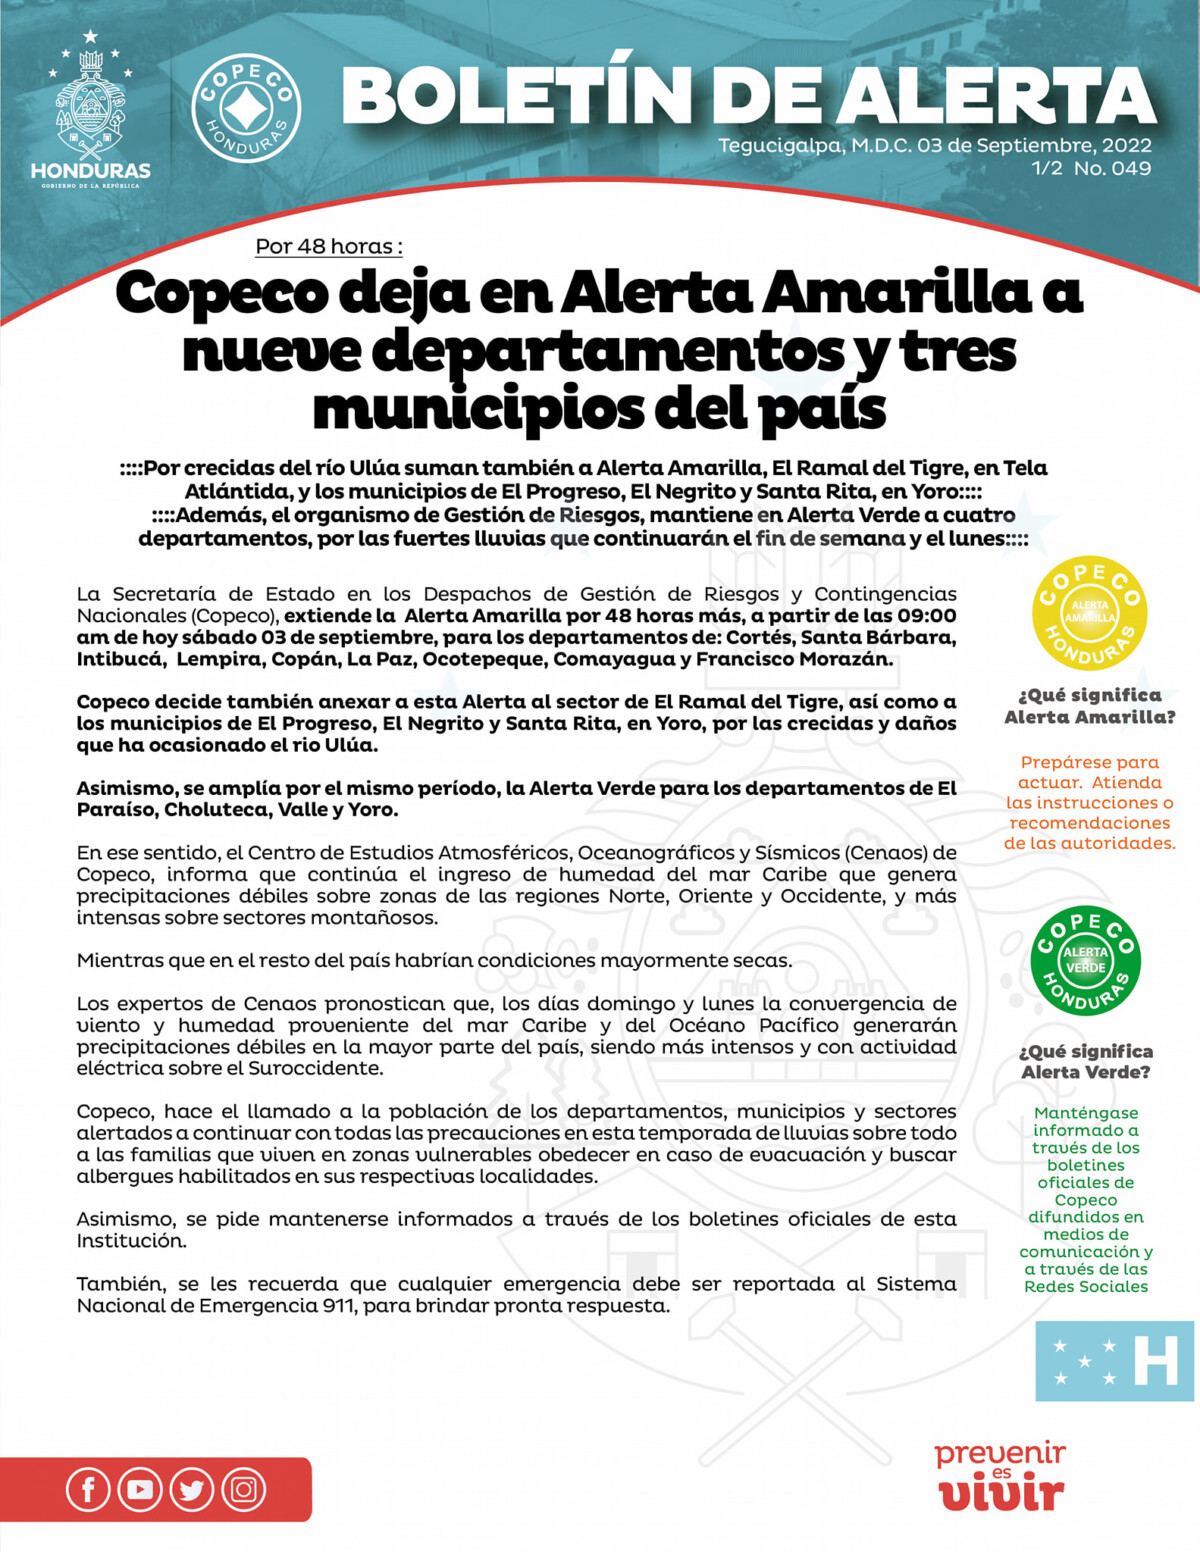 Copeco deja en Alerta Amarilla a nueve departamentos y tres municipios del país